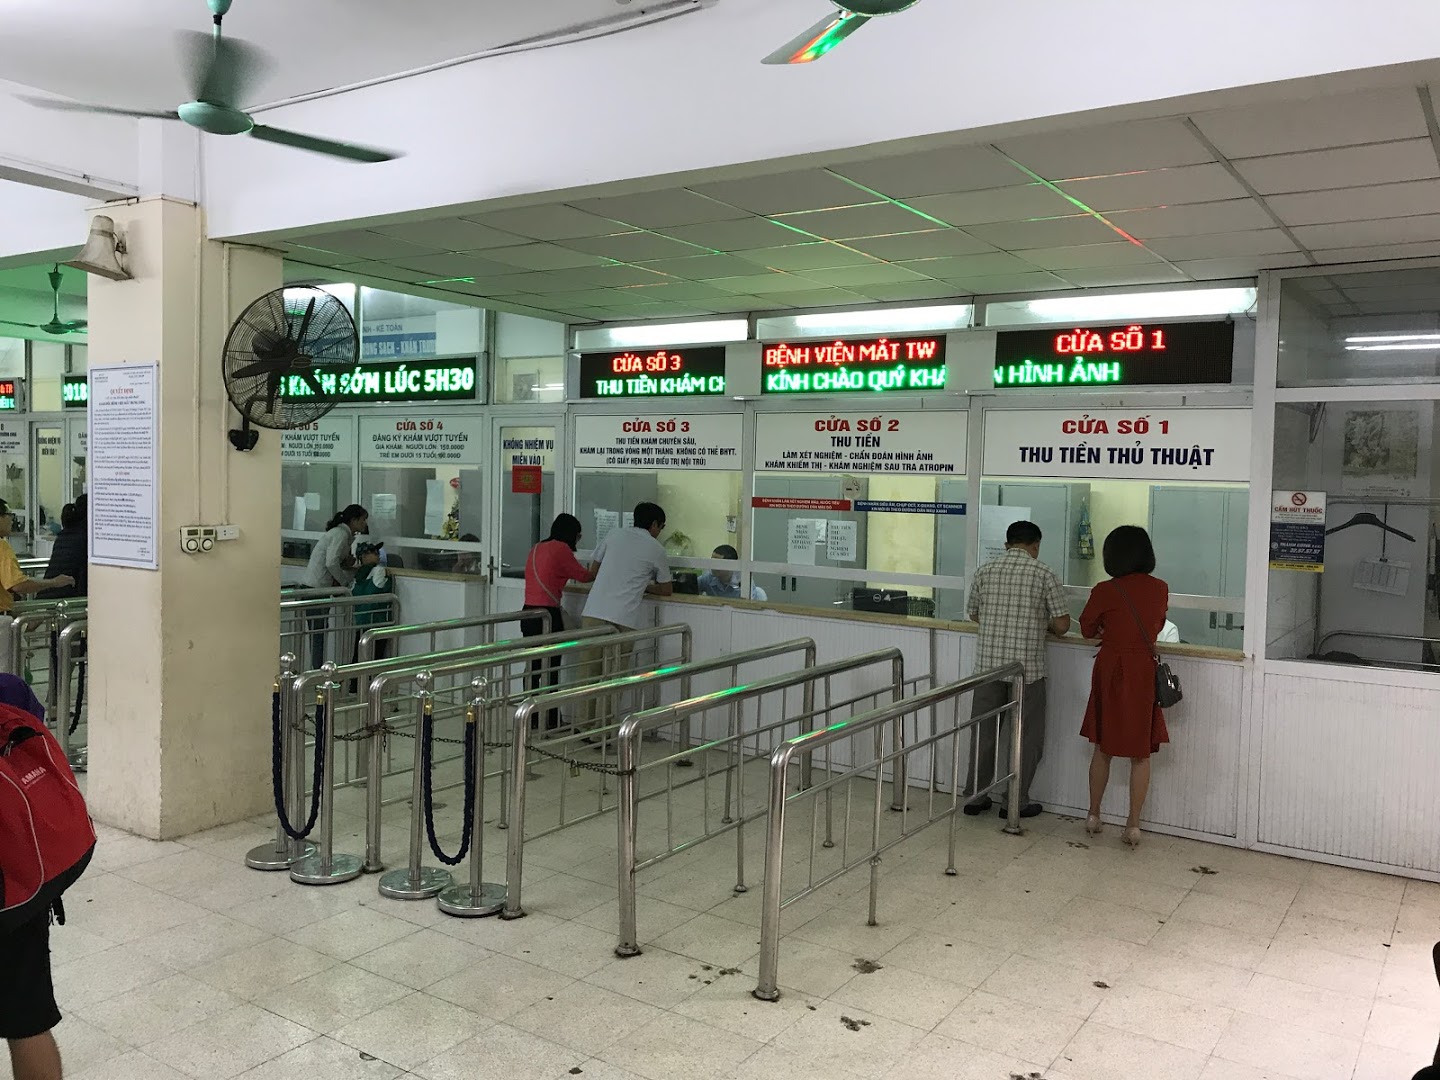 Người dân xếp hàng chờ mua thuốc tại Bệnh viện Mắt Trung ương. (Ảnh: T.G/Vietnam+)